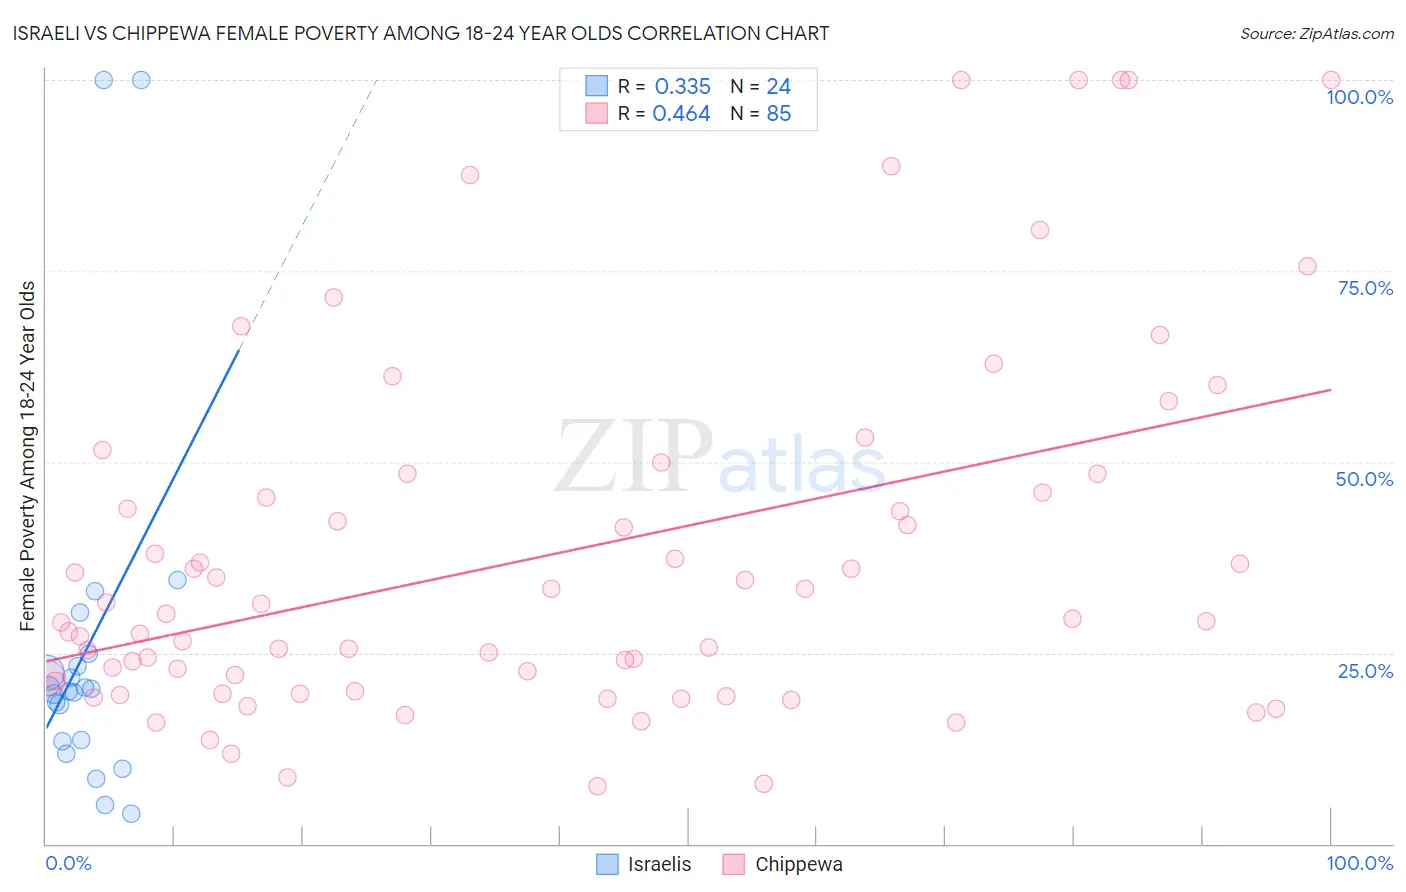 Israeli vs Chippewa Female Poverty Among 18-24 Year Olds